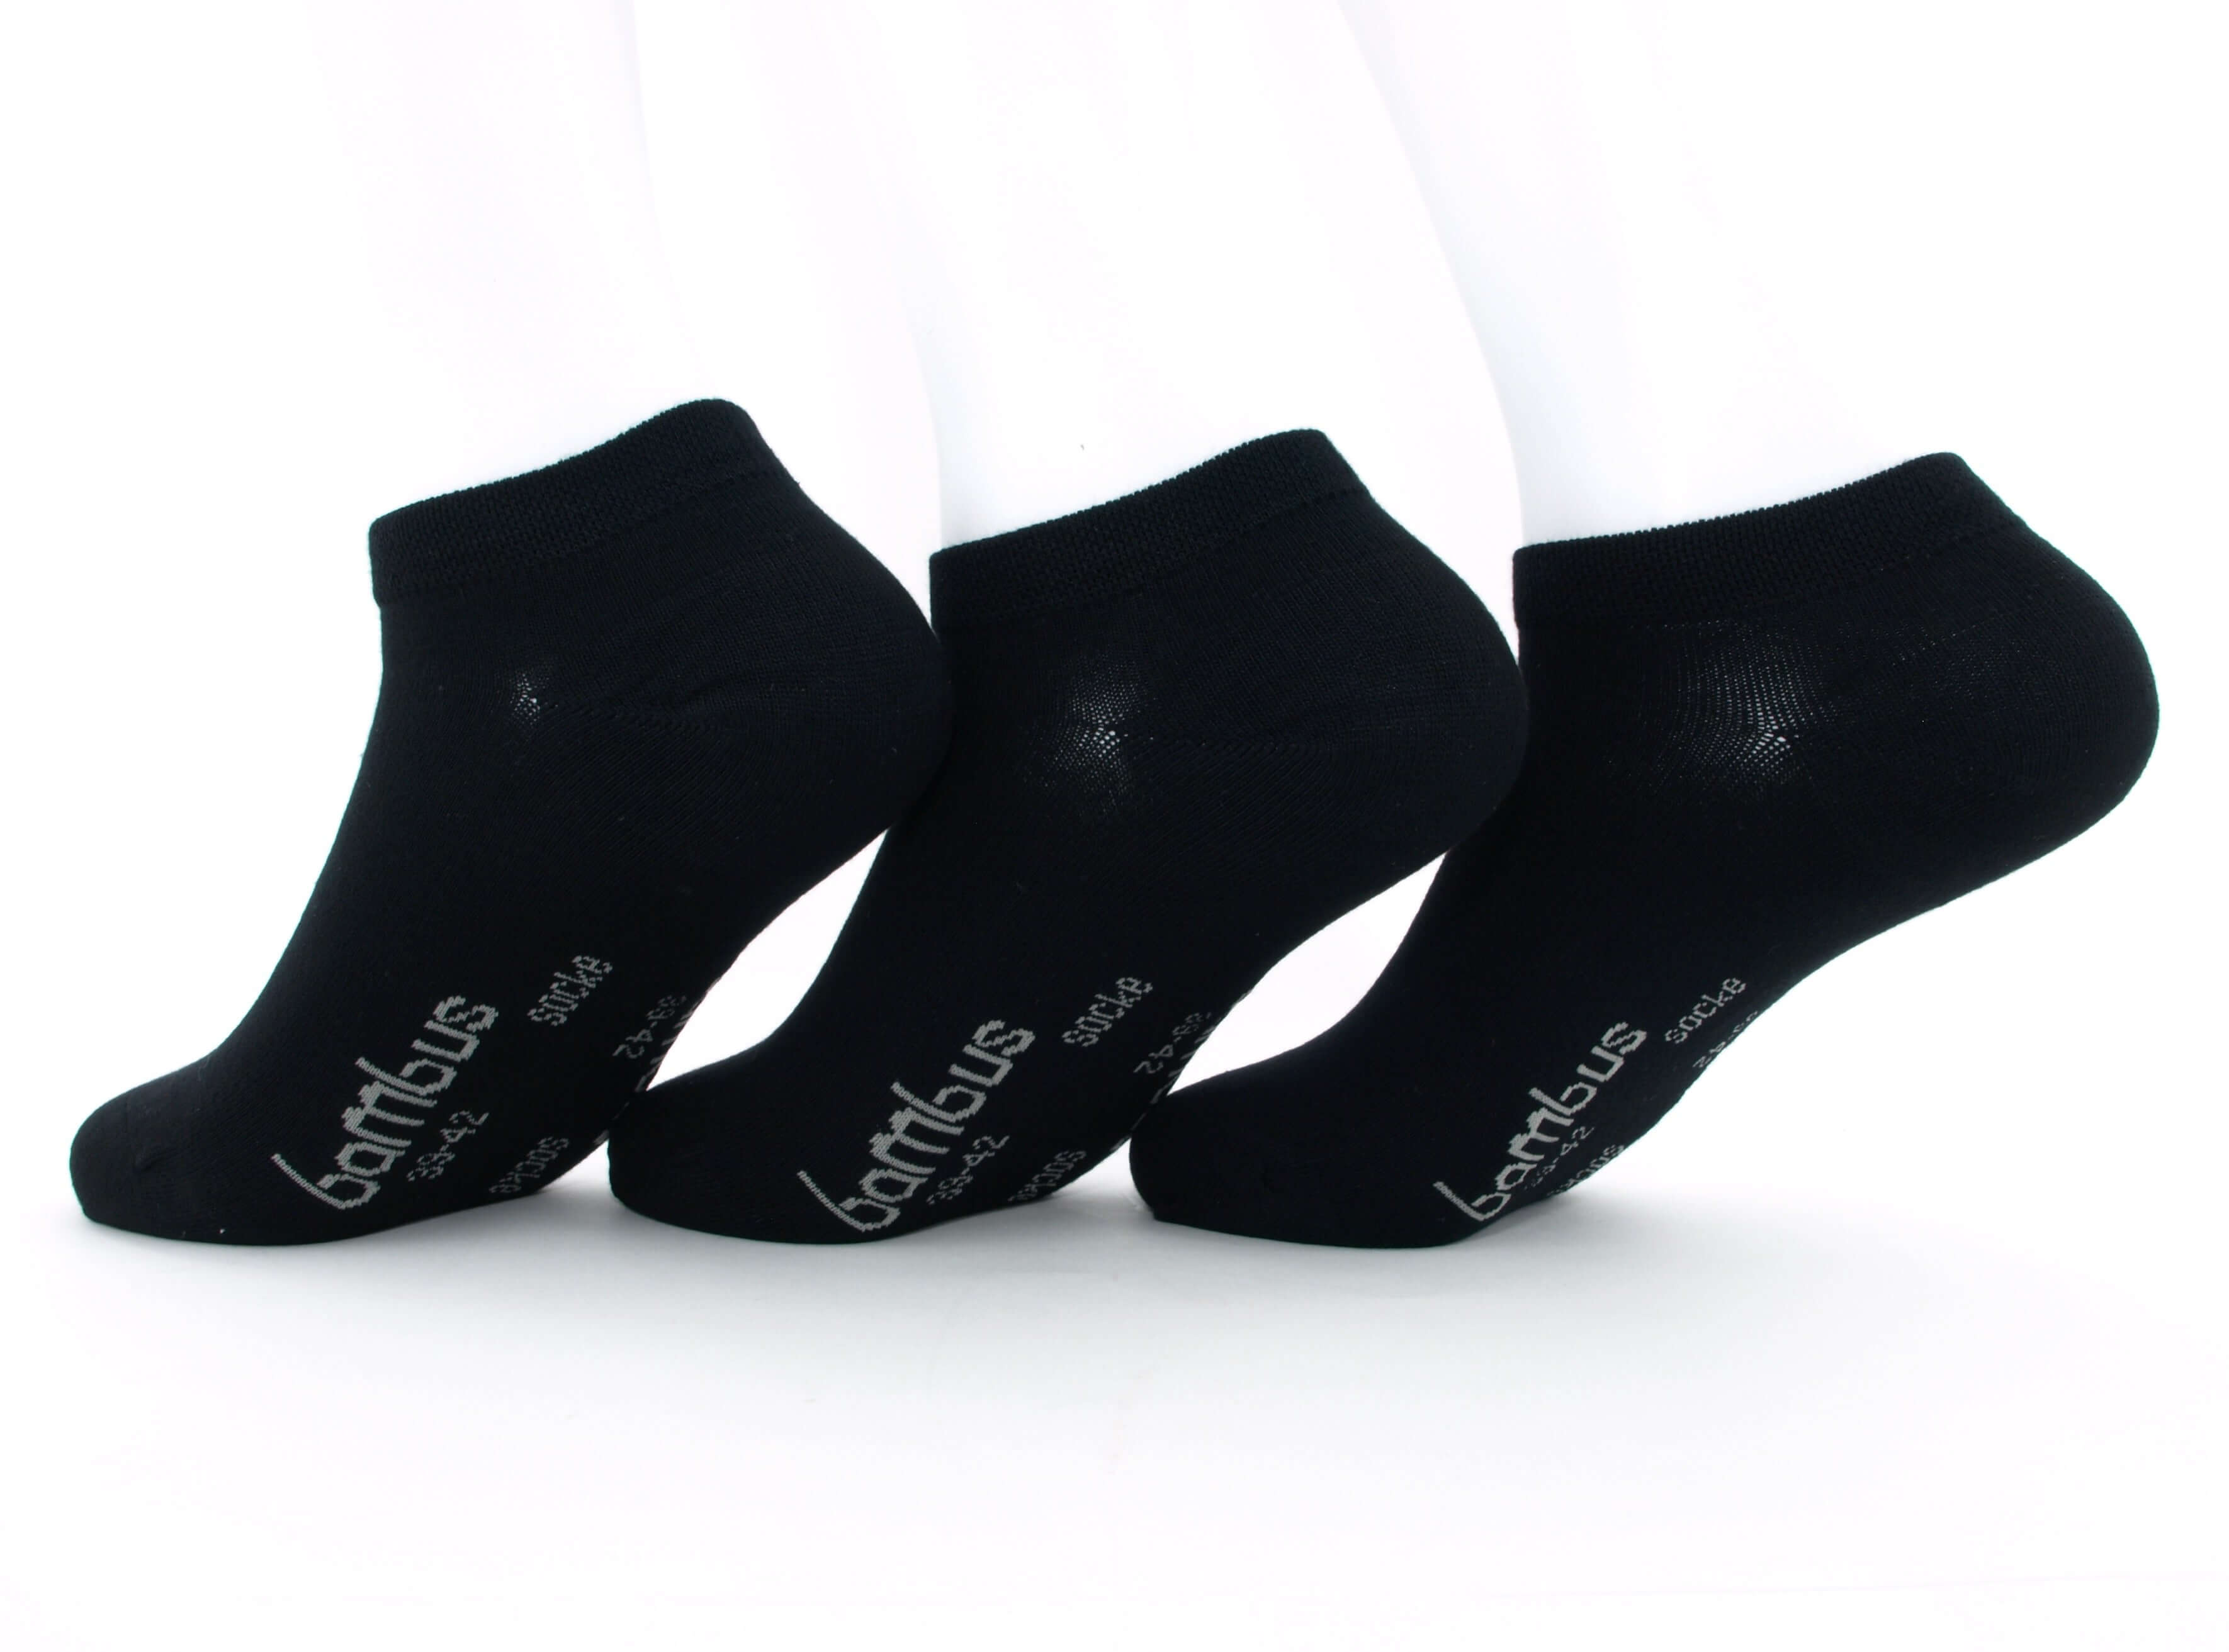 Bild: 12 Paar Bambus Socken Sneaker schwarz im Sparpack 1